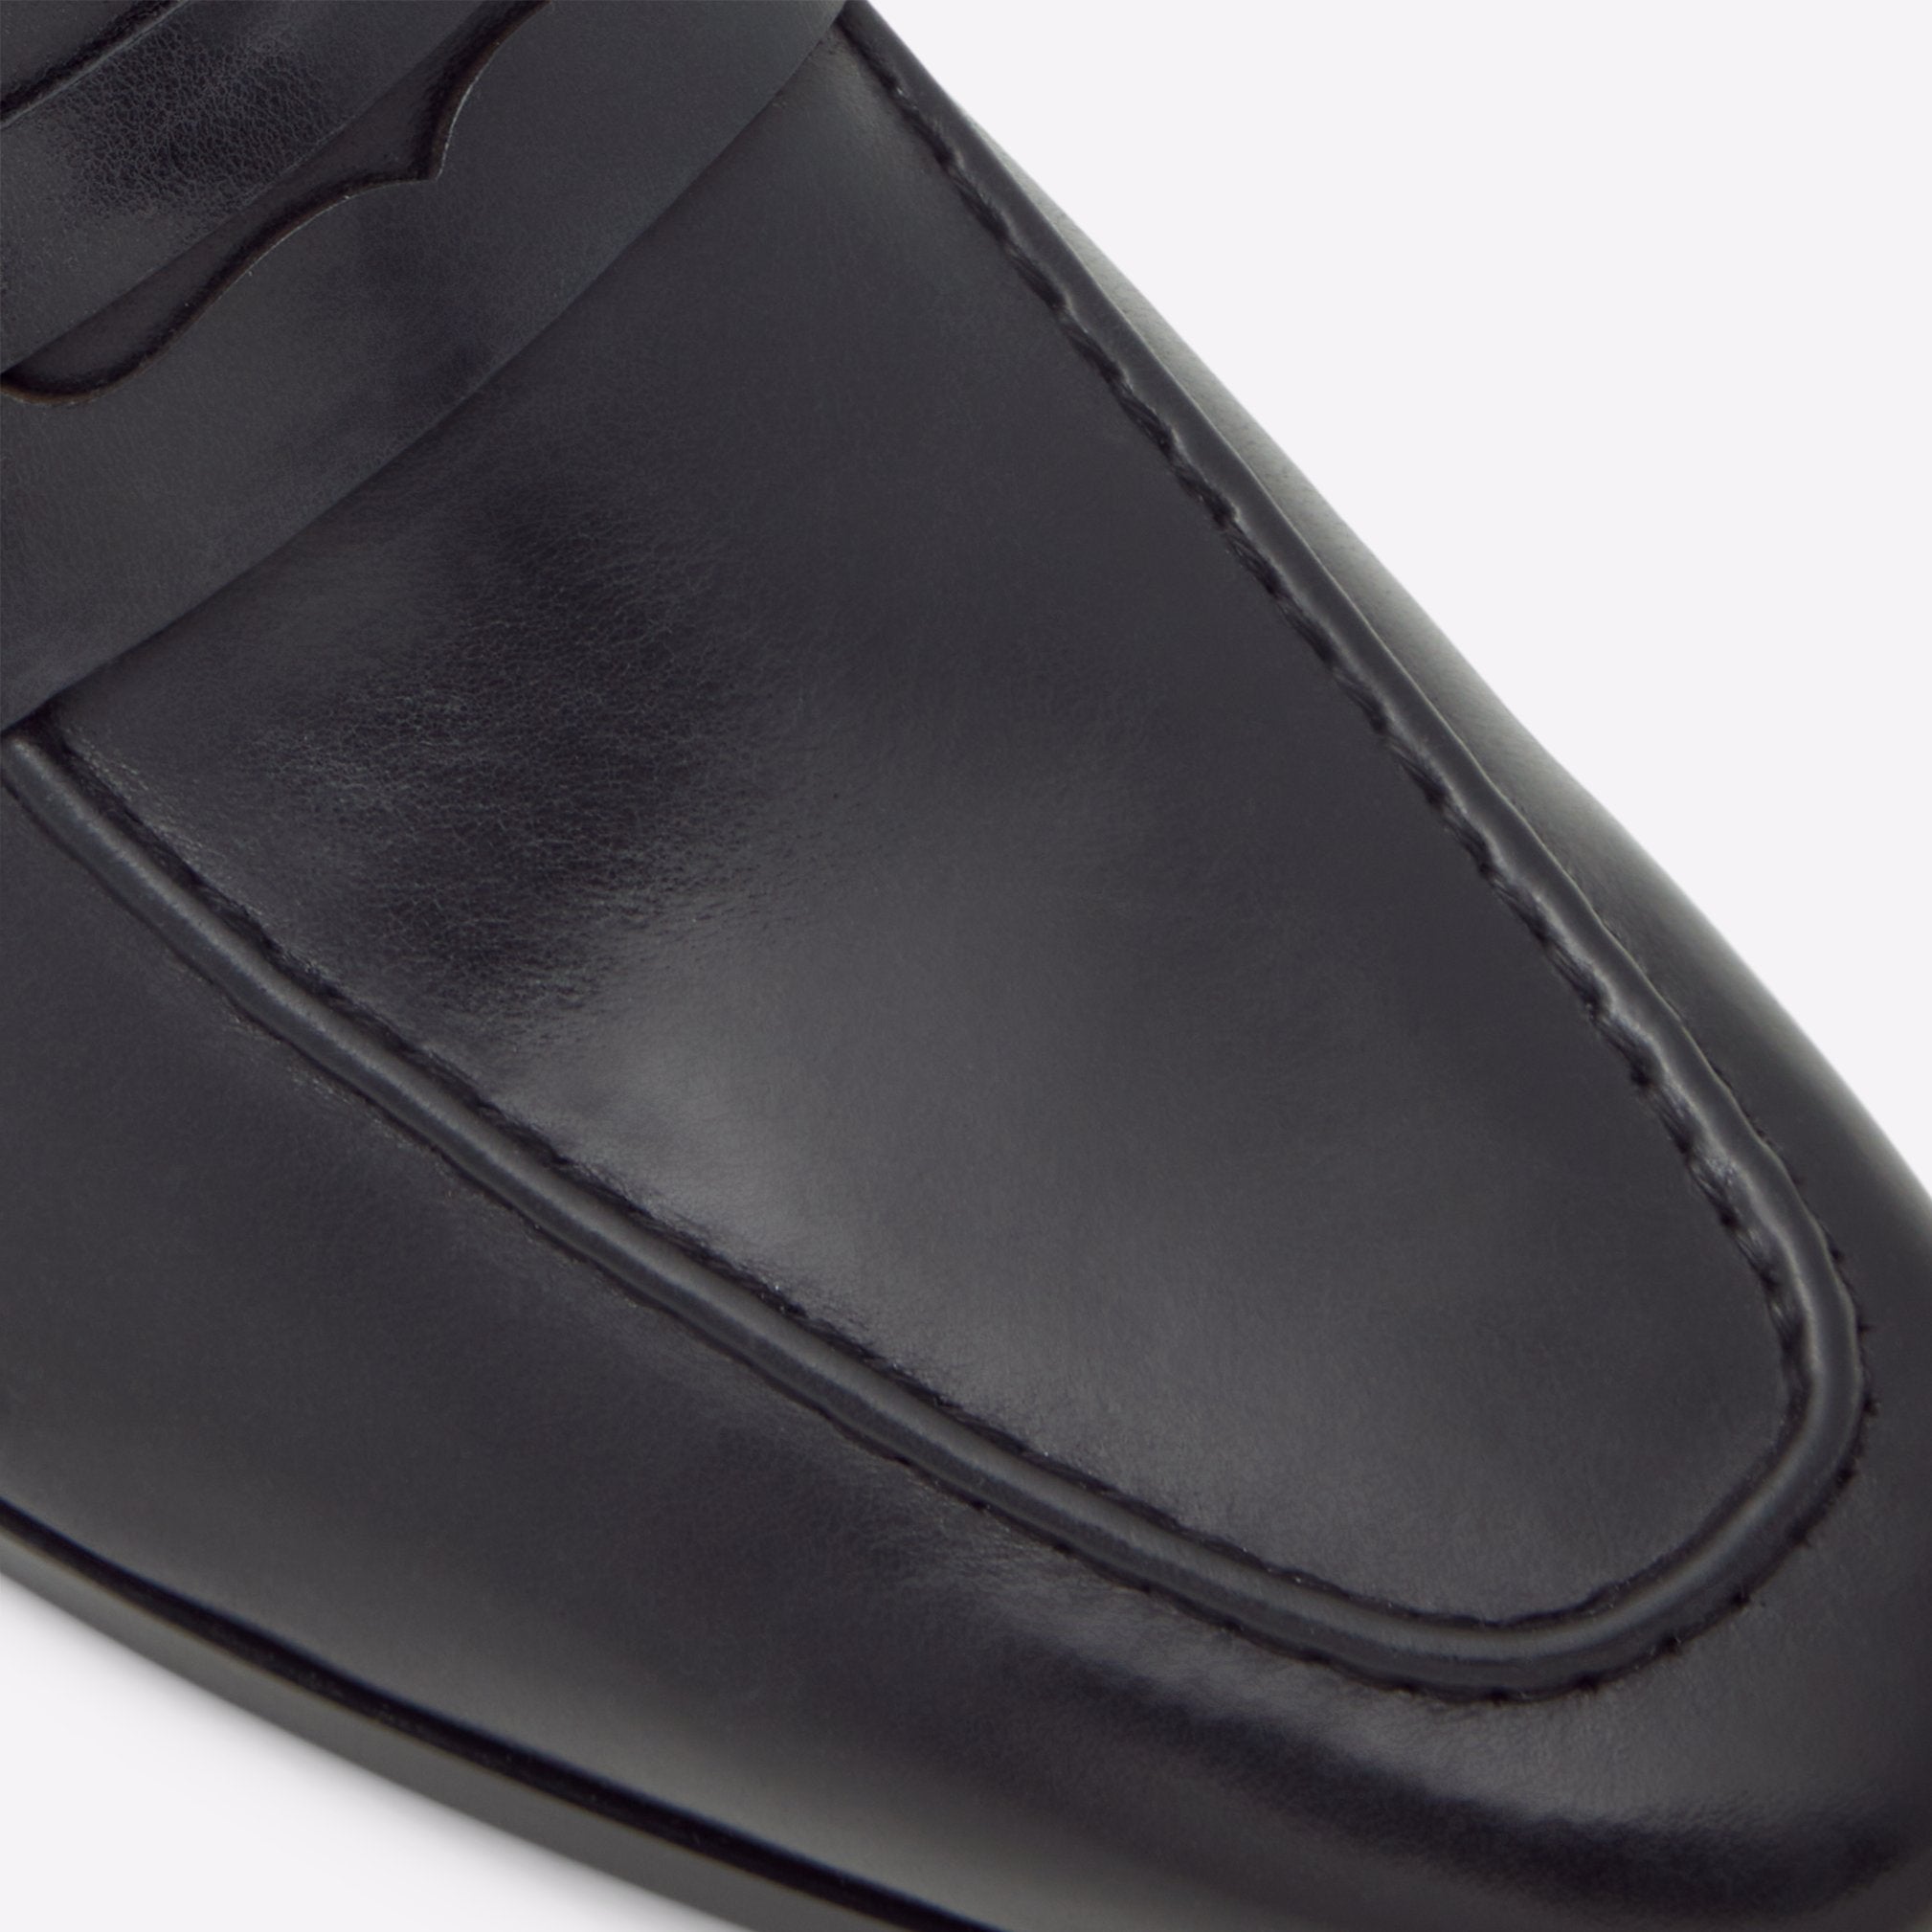 Kooperflex Men Shoes - Black - ALDO KSA